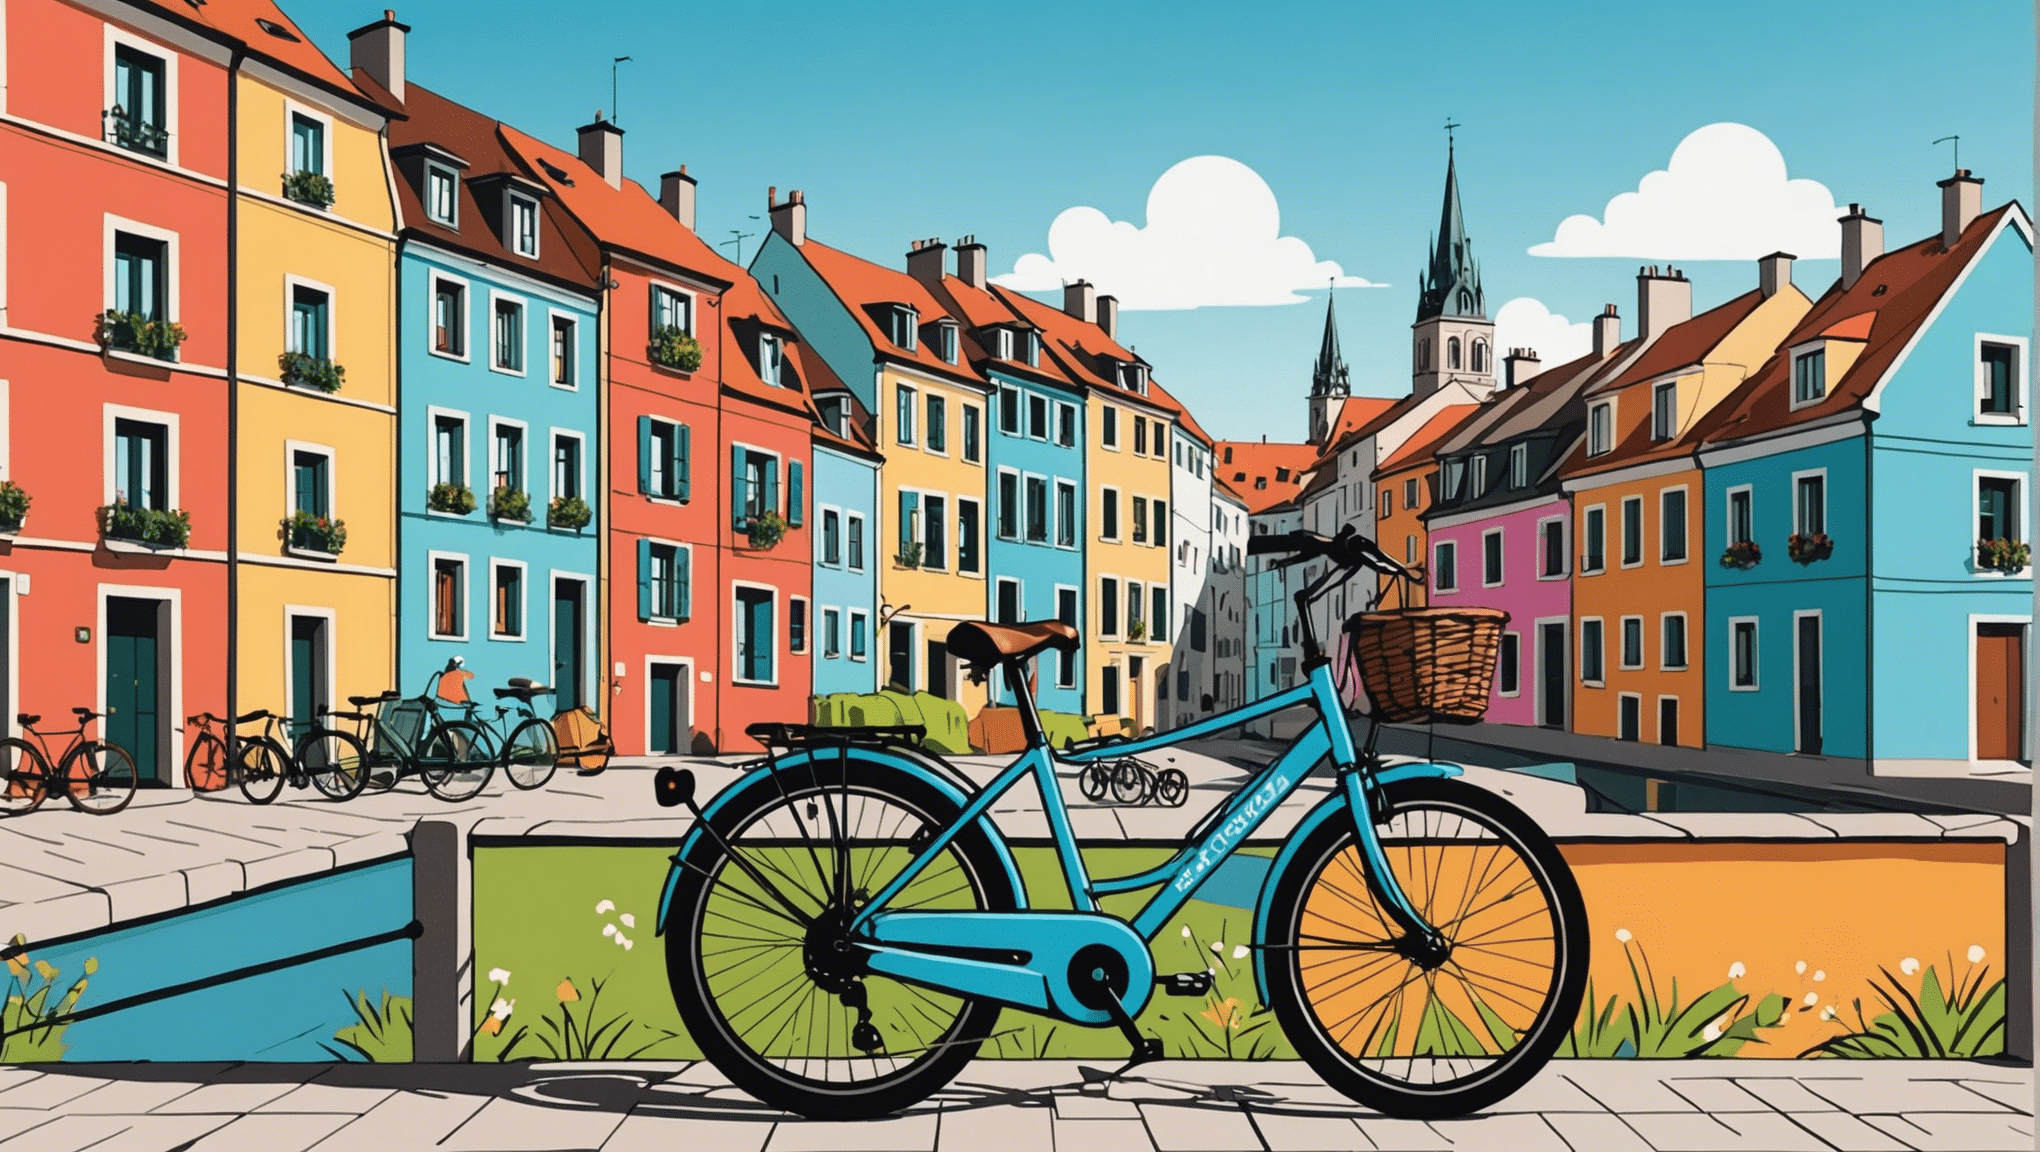 दो पहियों पर महाद्वीप की खोज के लिए हमारी युक्तियों के साथ यूरोप में साइकिल यात्रा के शौकीनों के लिए अवश्य देखने योग्य स्थलों की खोज करें।